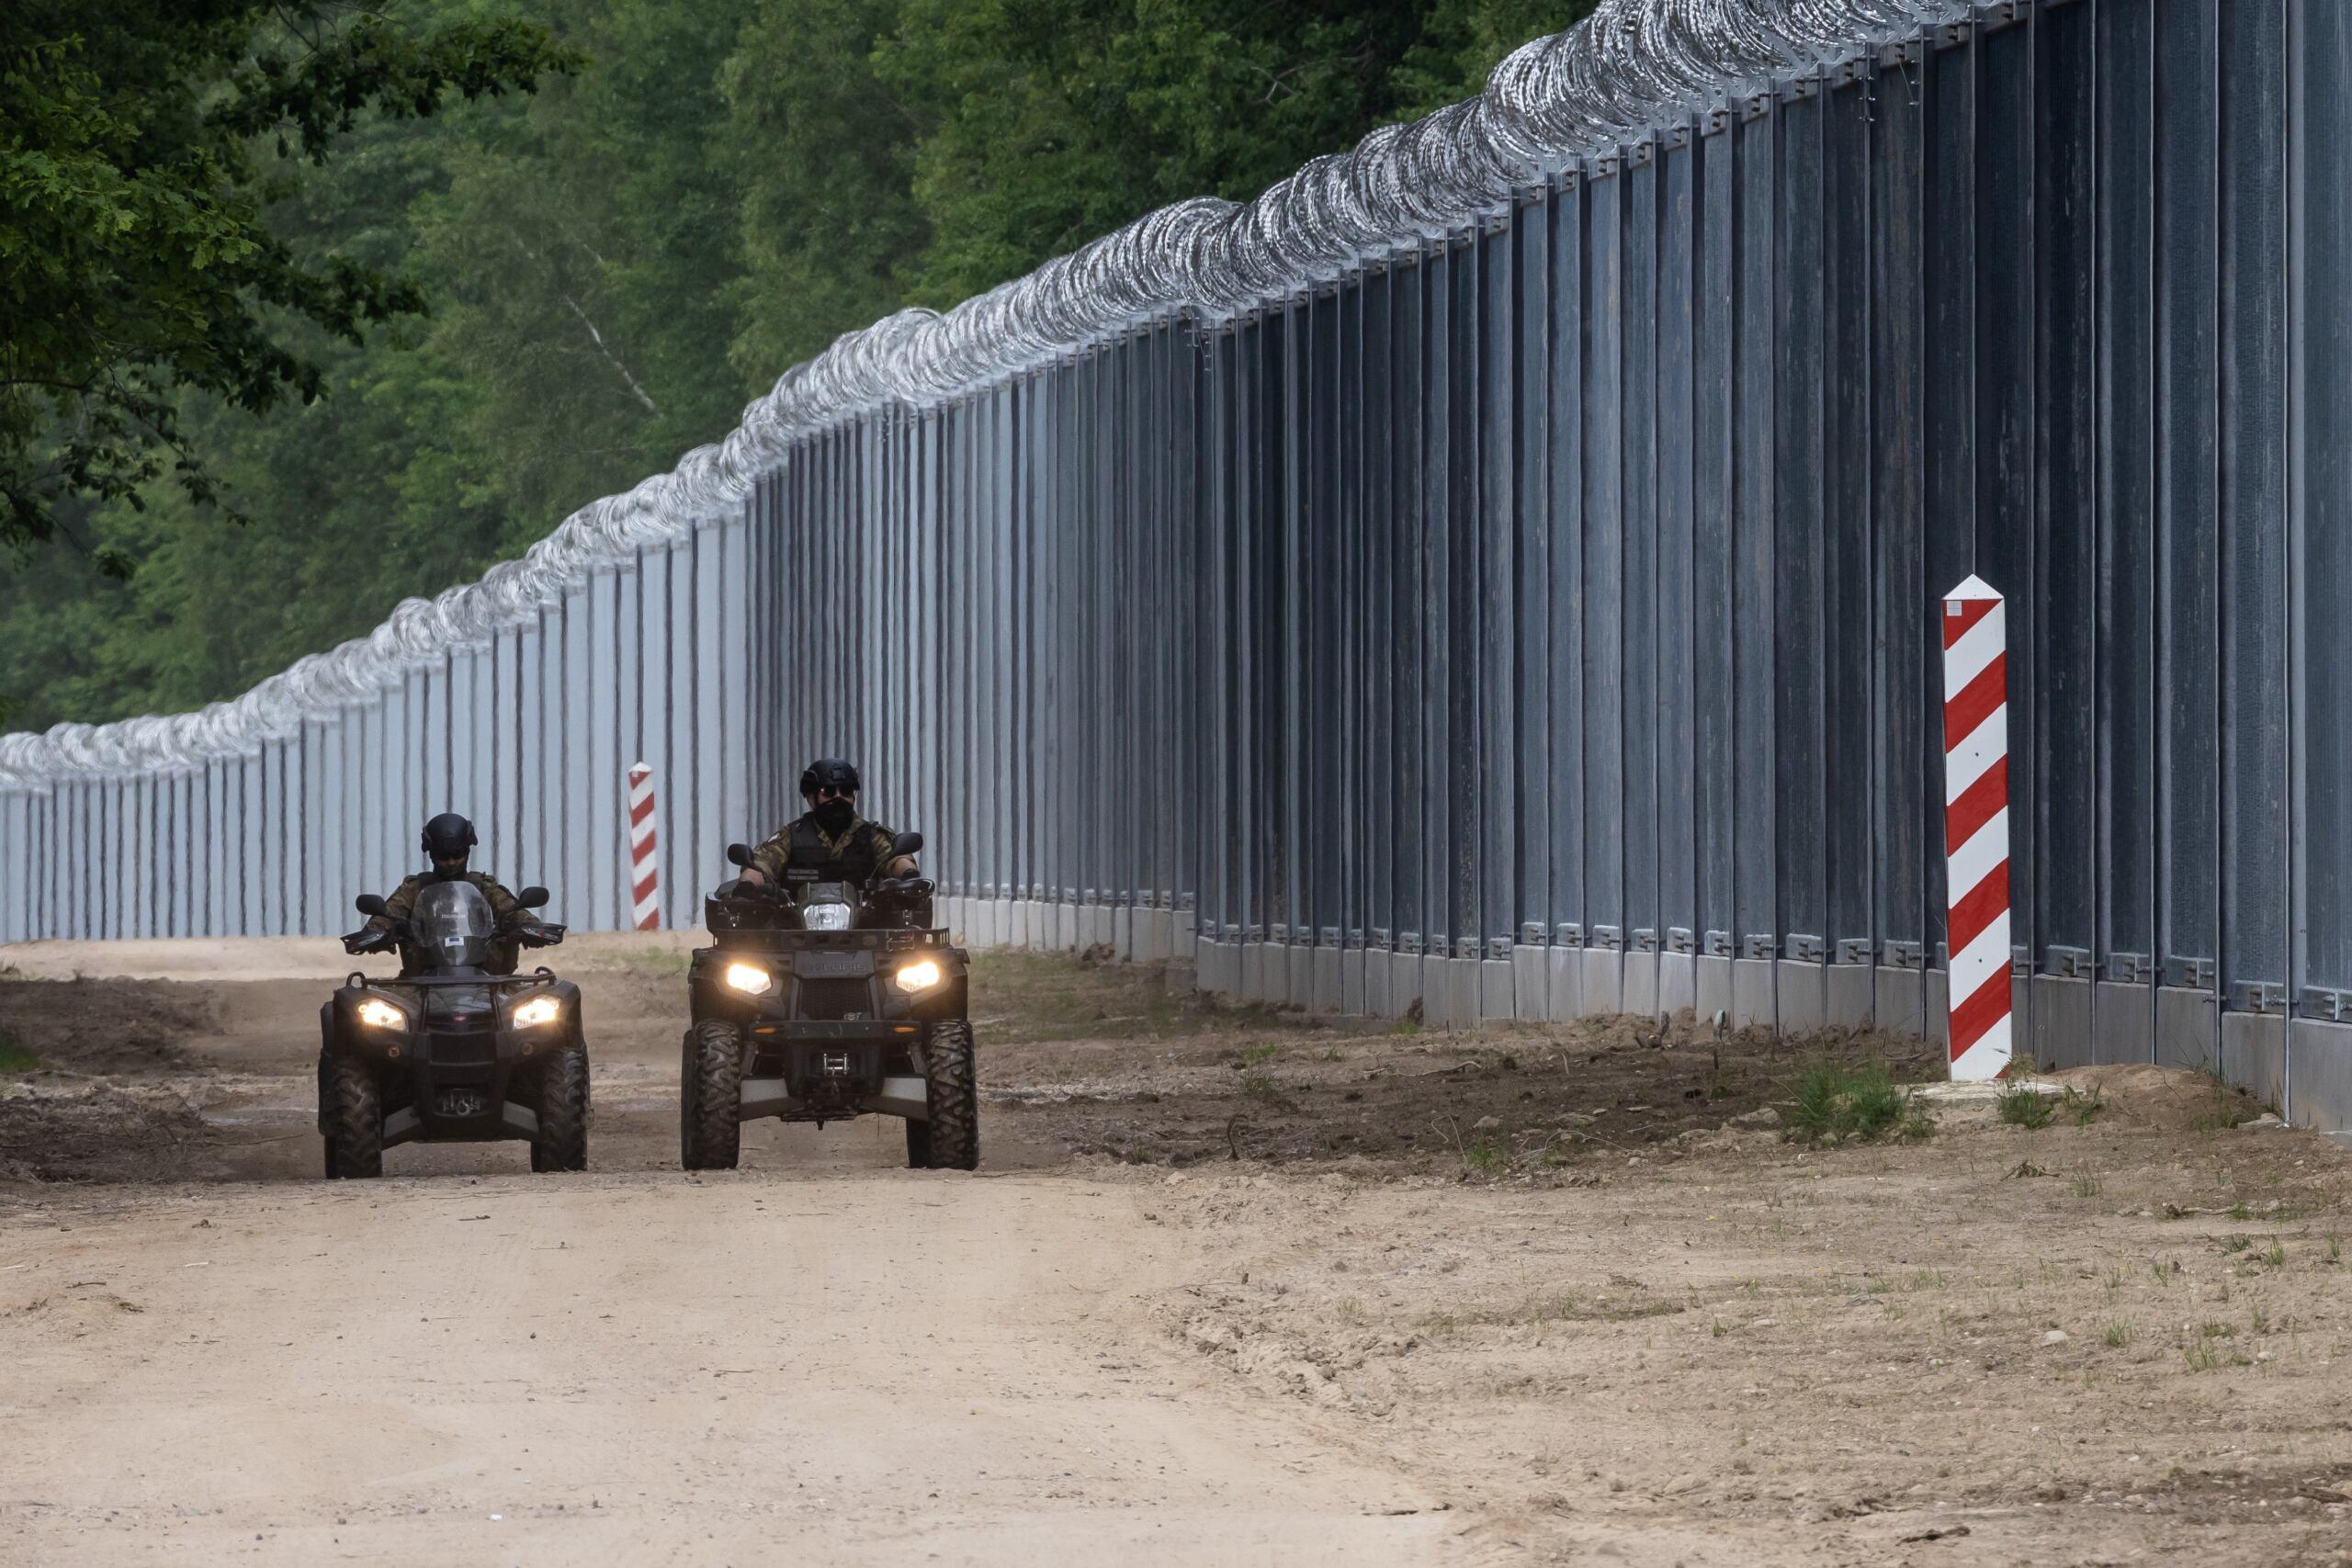 Mur na polsko-białoruskiej granicy, funkcjonariusze Straży Granicznej jadą wzdłuż niego na quadach